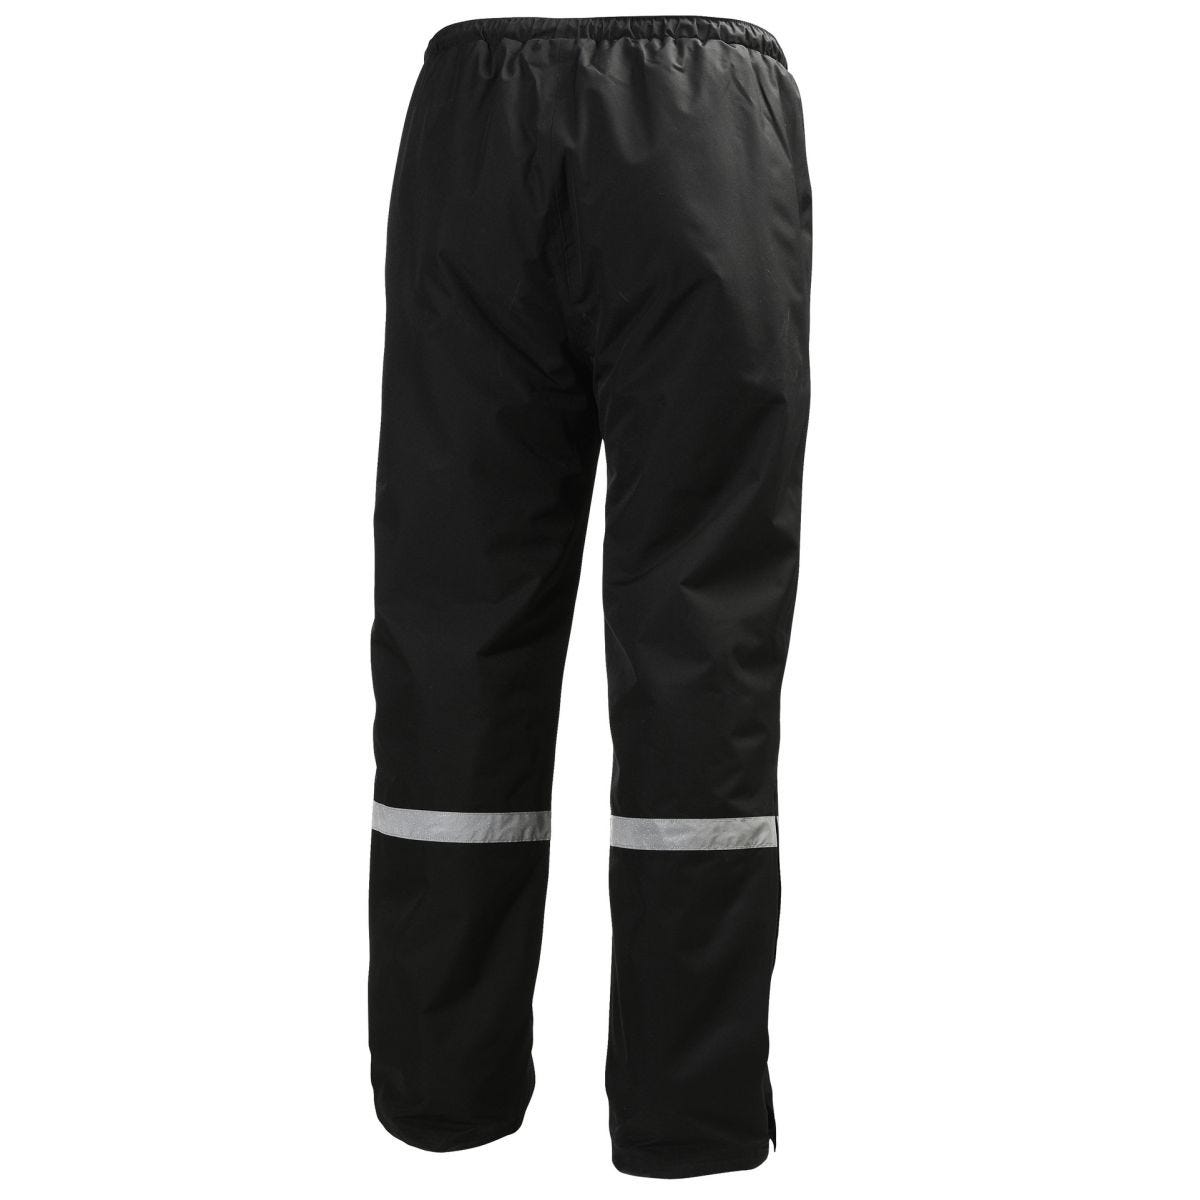 Pantalon d'hiver isolé Manchester Noir - Helly Hansen - Taille S 1